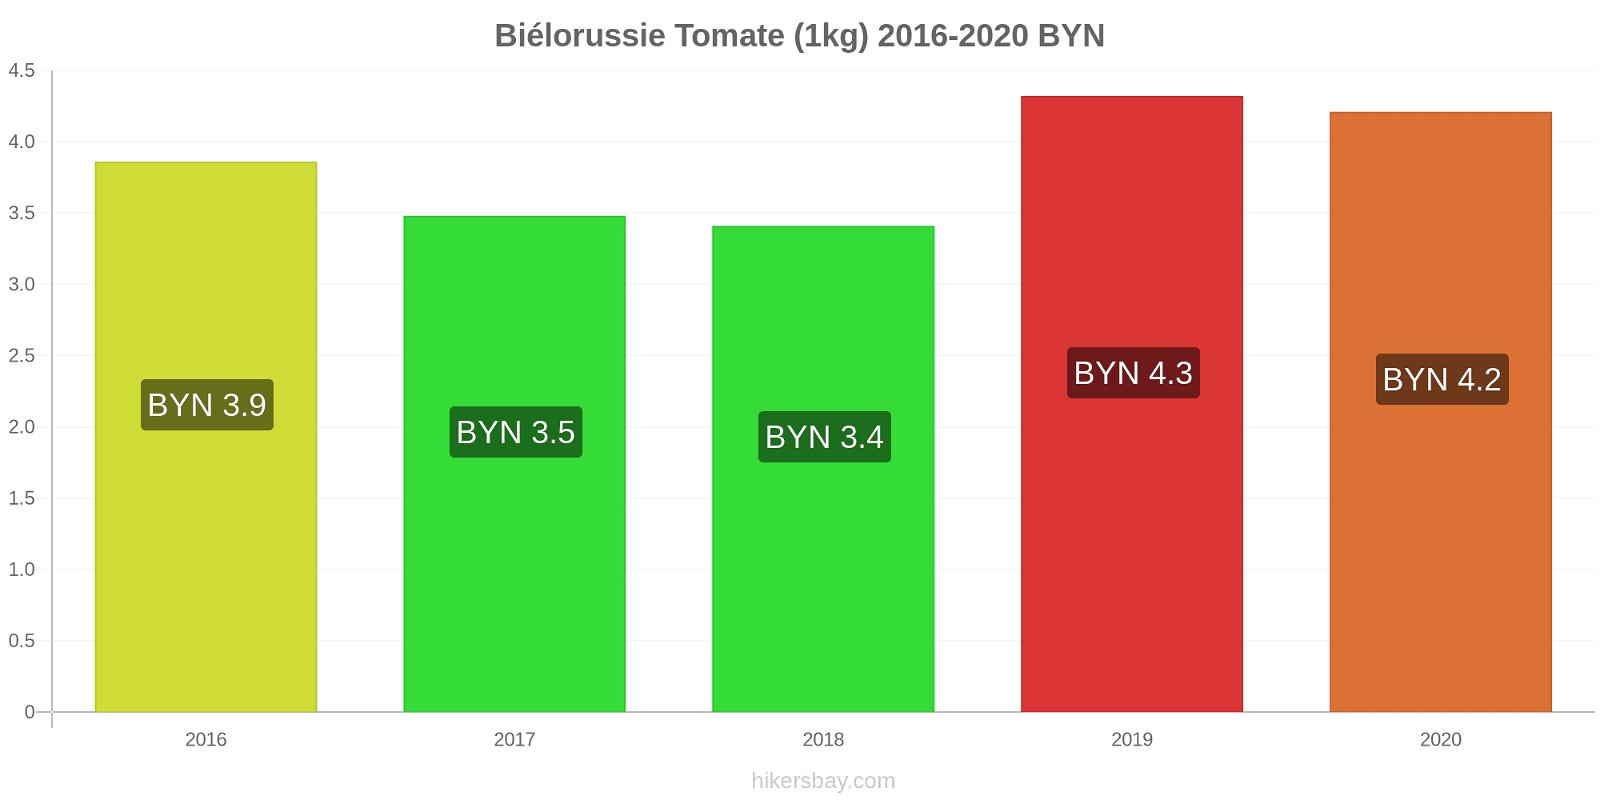 Biélorussie changements de prix Tomate (1kg) hikersbay.com